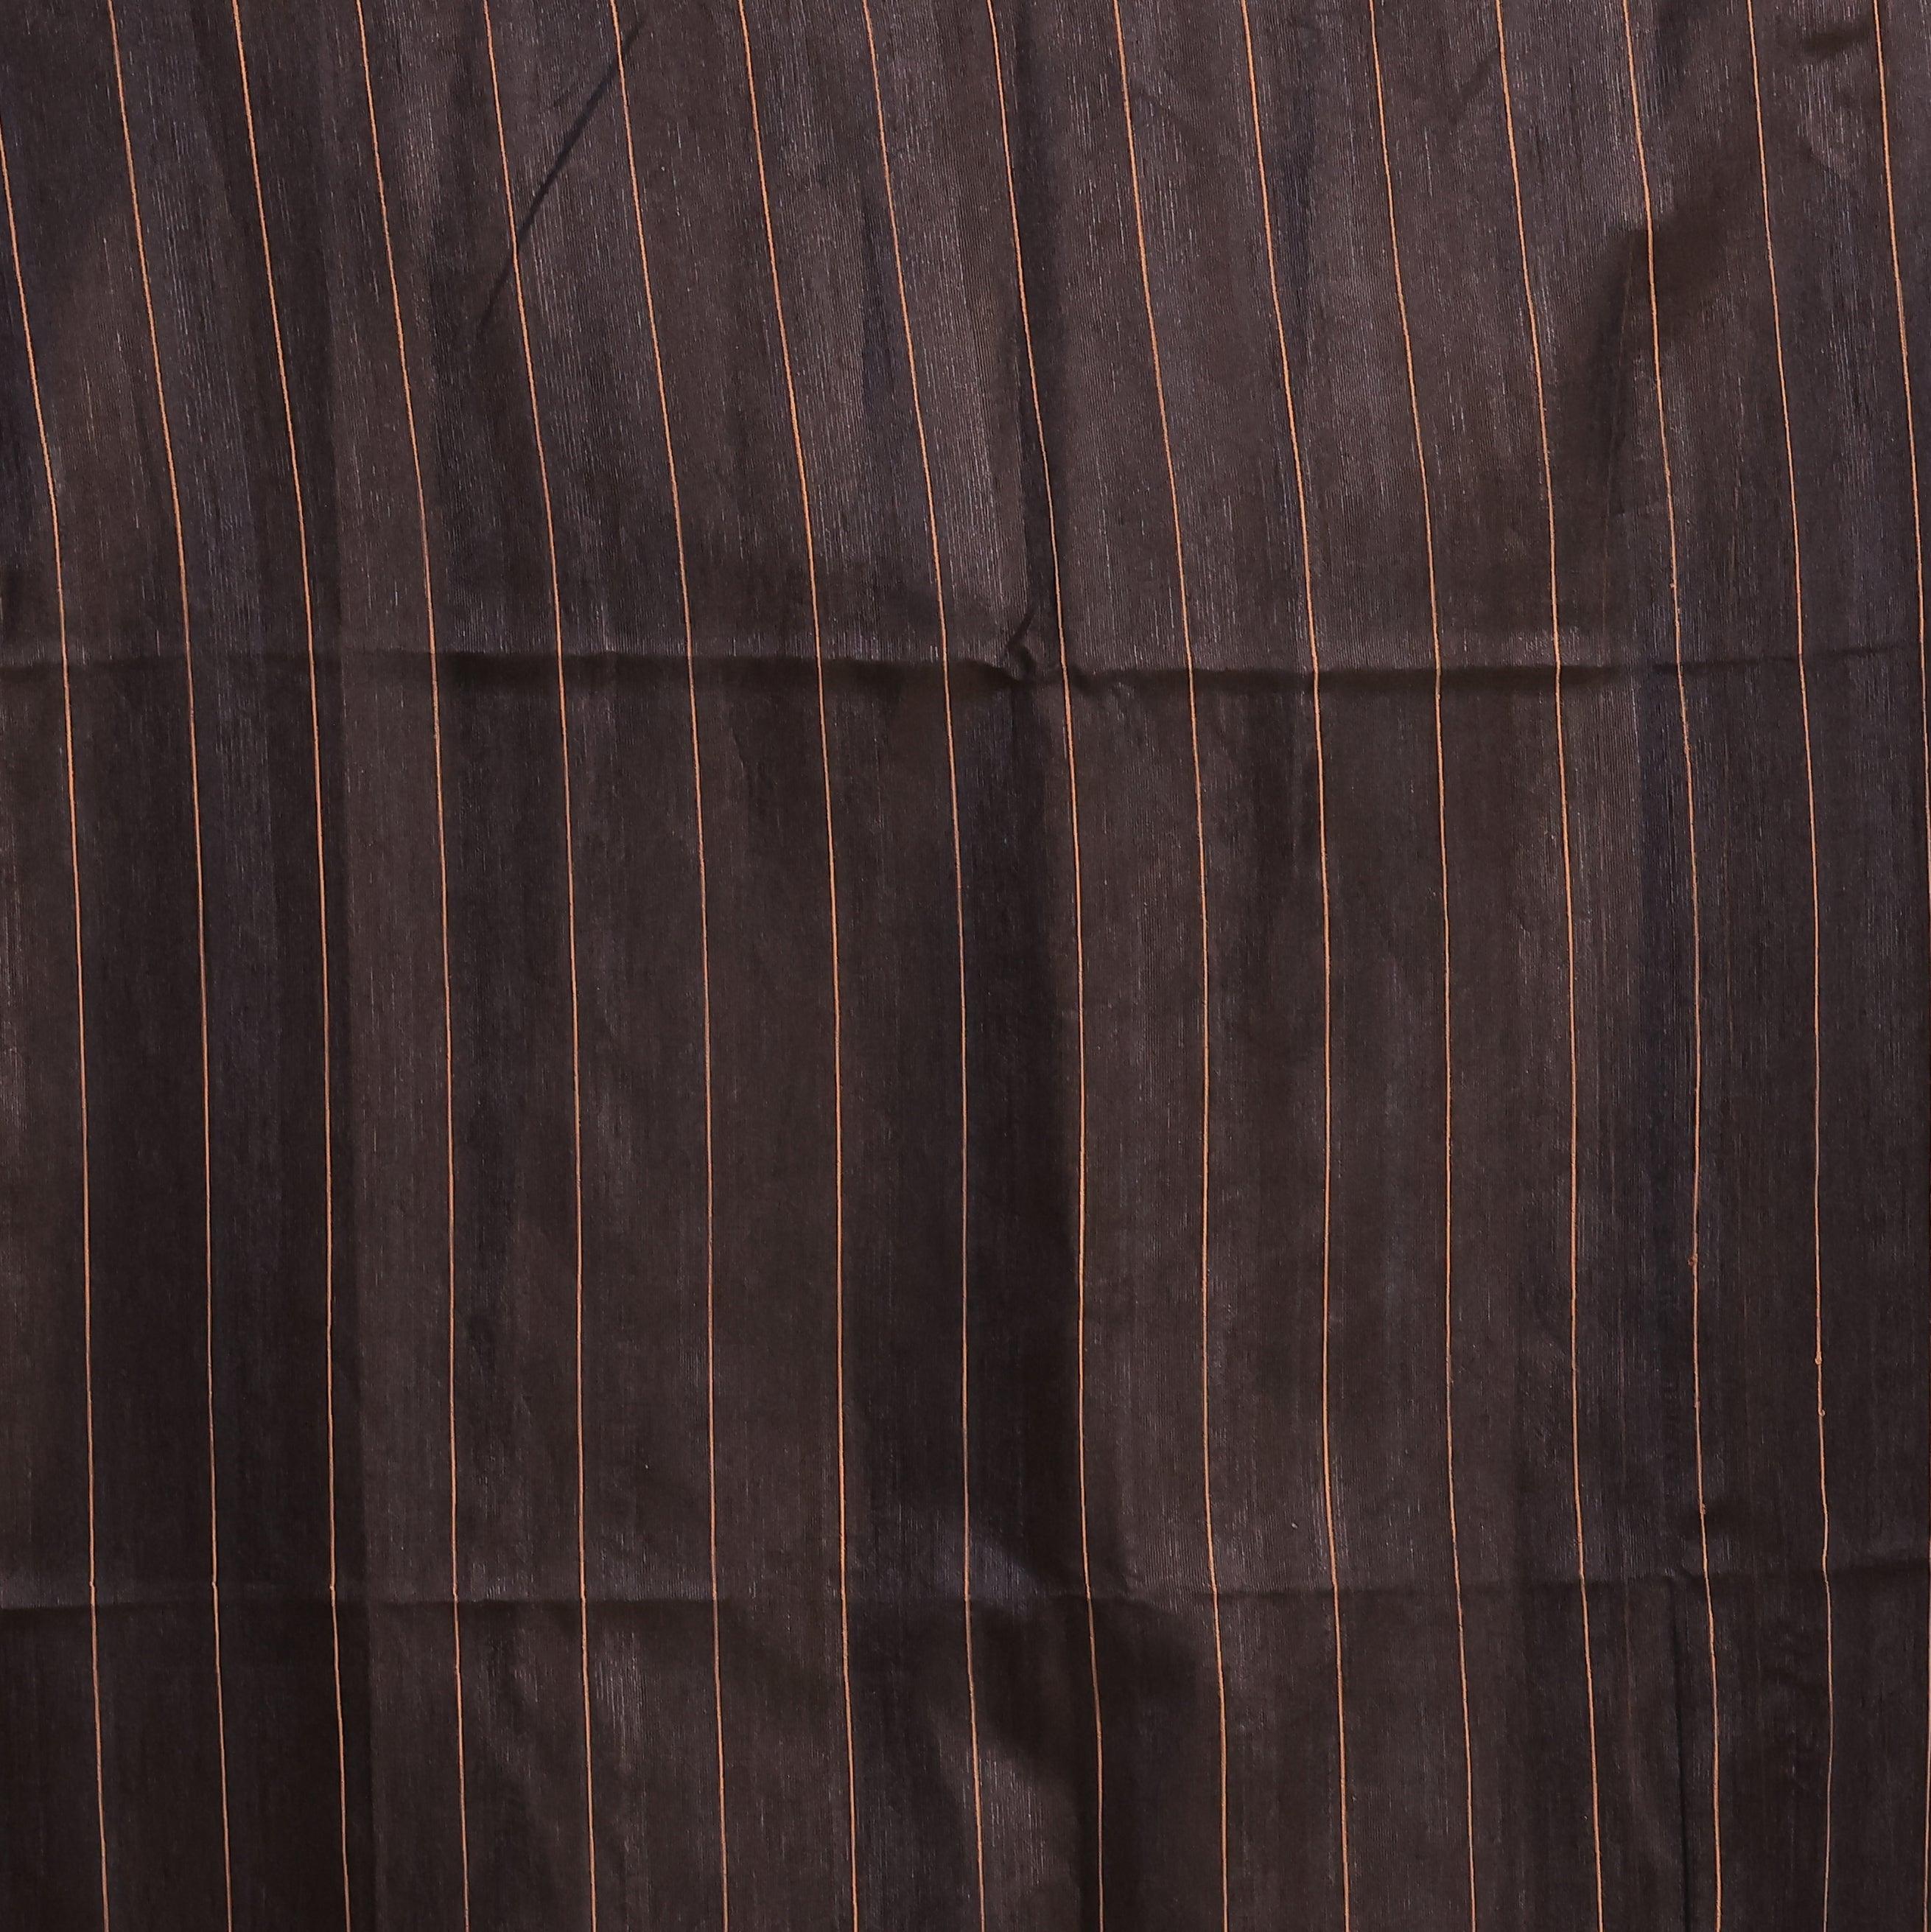 KAVVYA soft & lightweight black color benarasi handloom saree - KAVVYA 